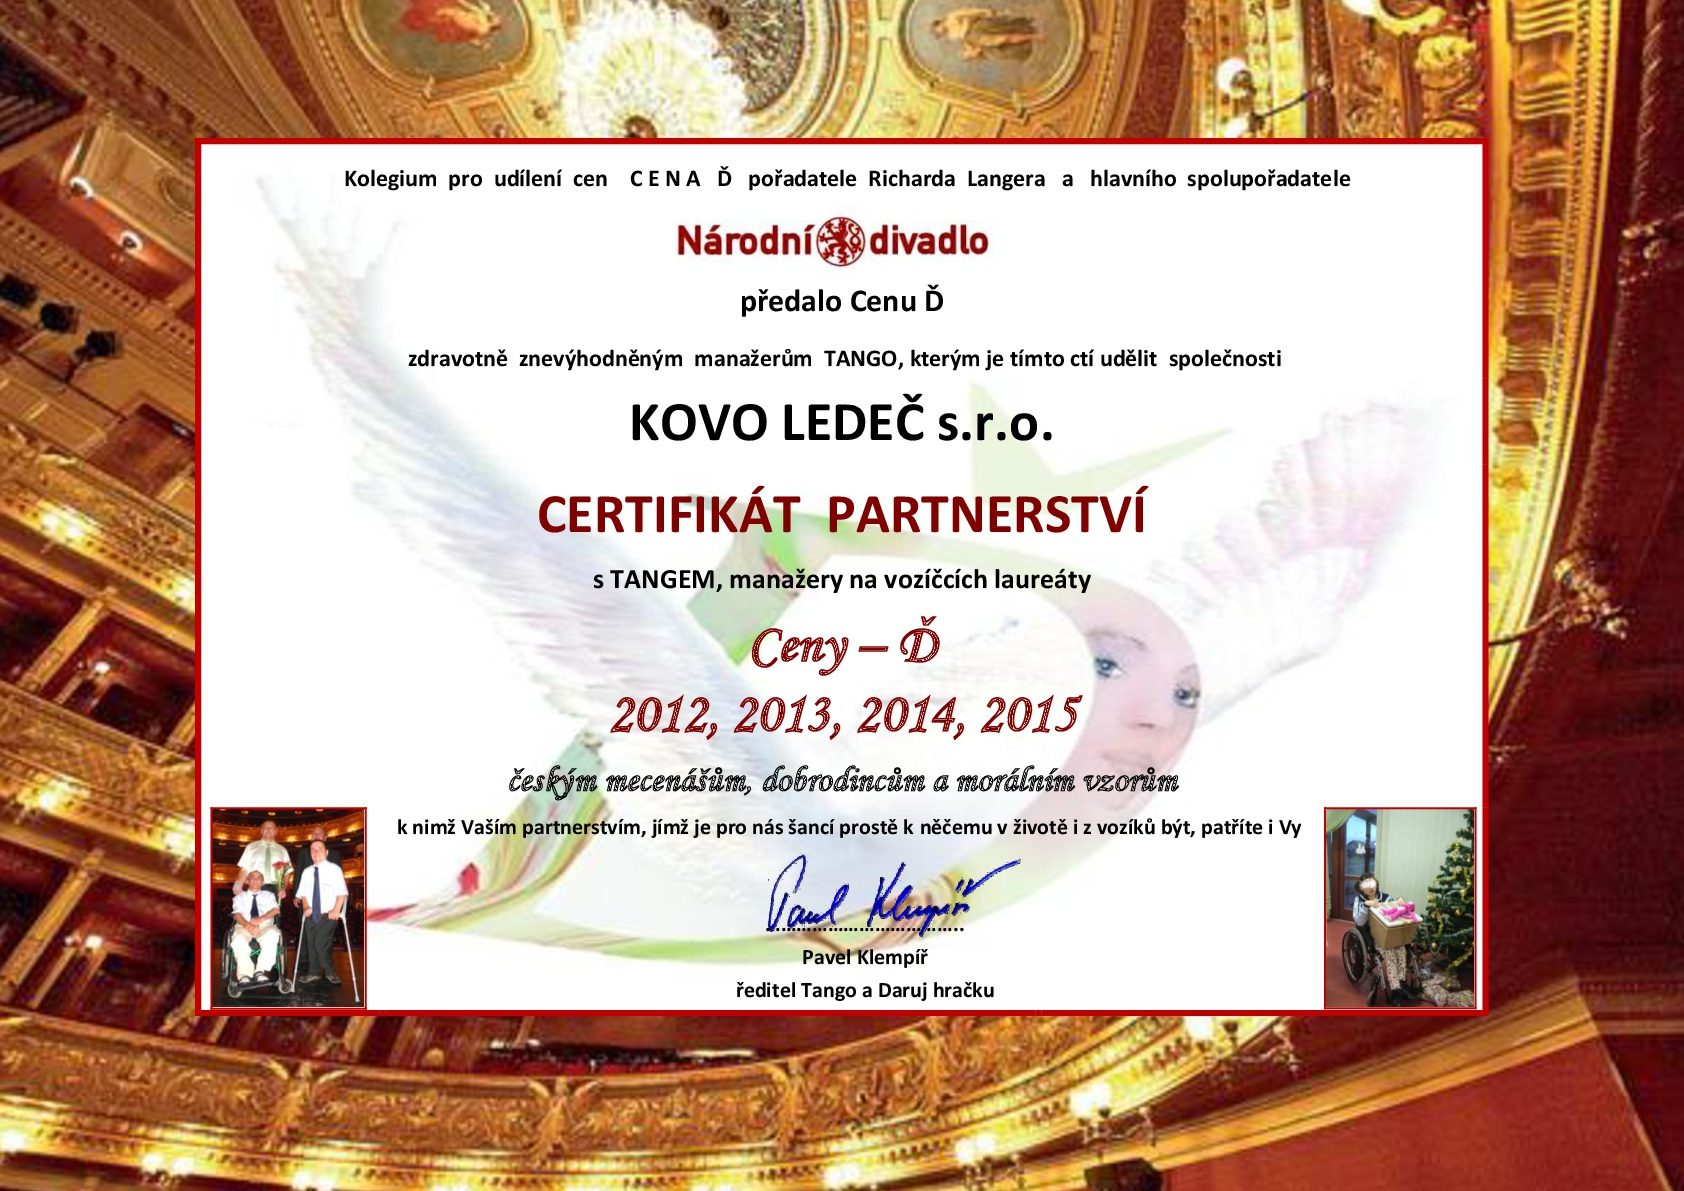 KOVO LEDEČ-Certifikát partnertsví Cena-D-Tango-2016-001